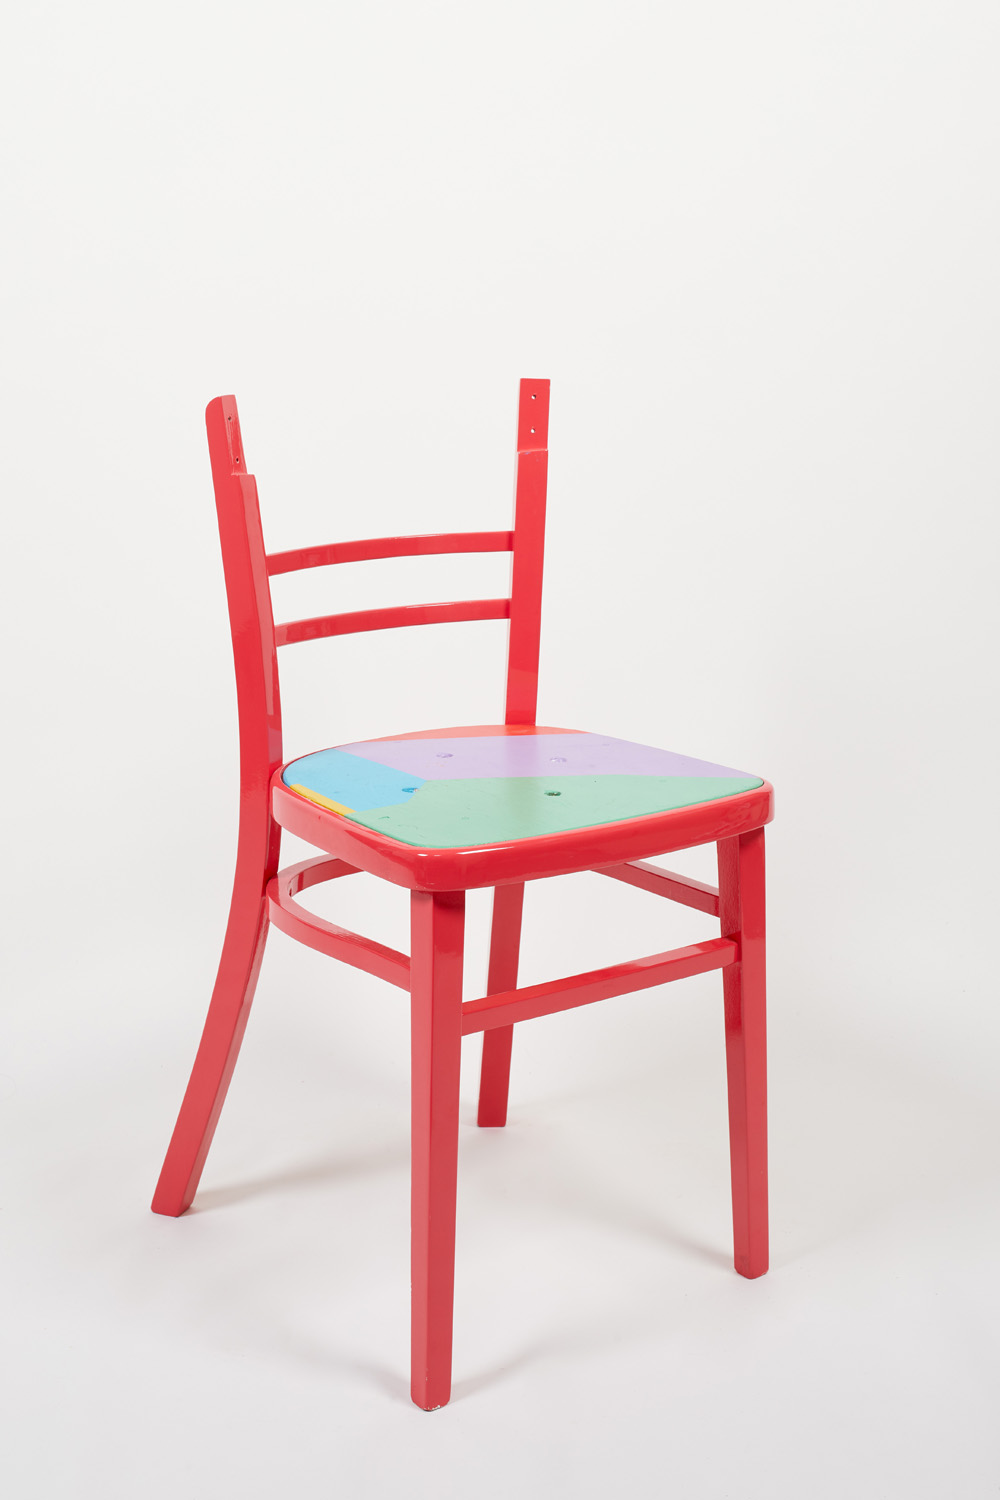 Red chair by Yinka Ilori